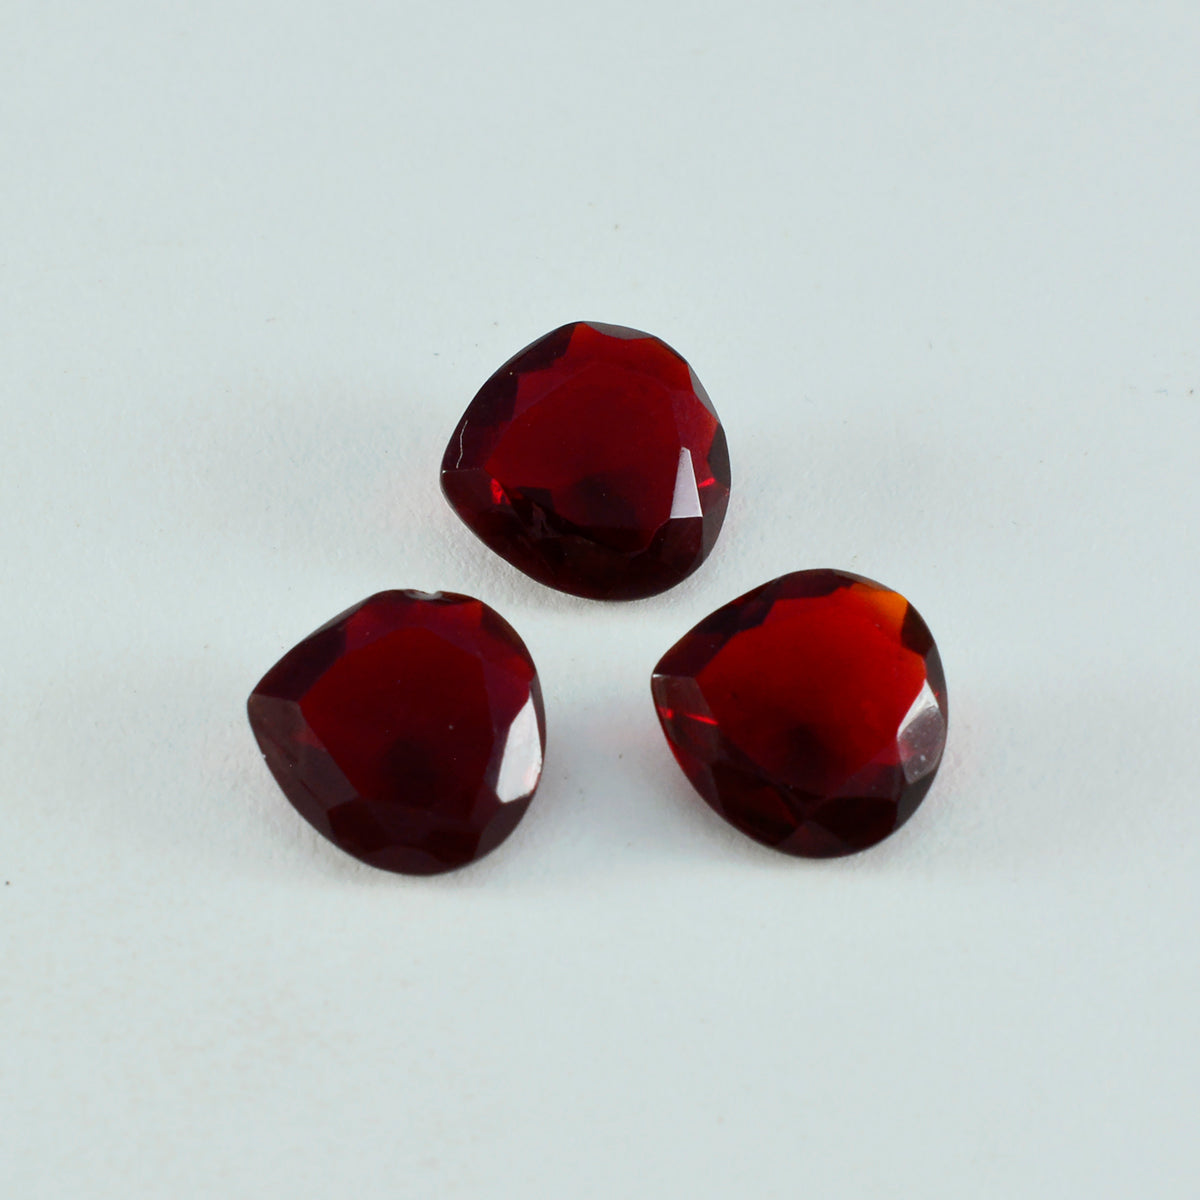 riyogems 1шт красный рубин cz ограненный 15x15 мм драгоценный камень в форме сердца AAA качество